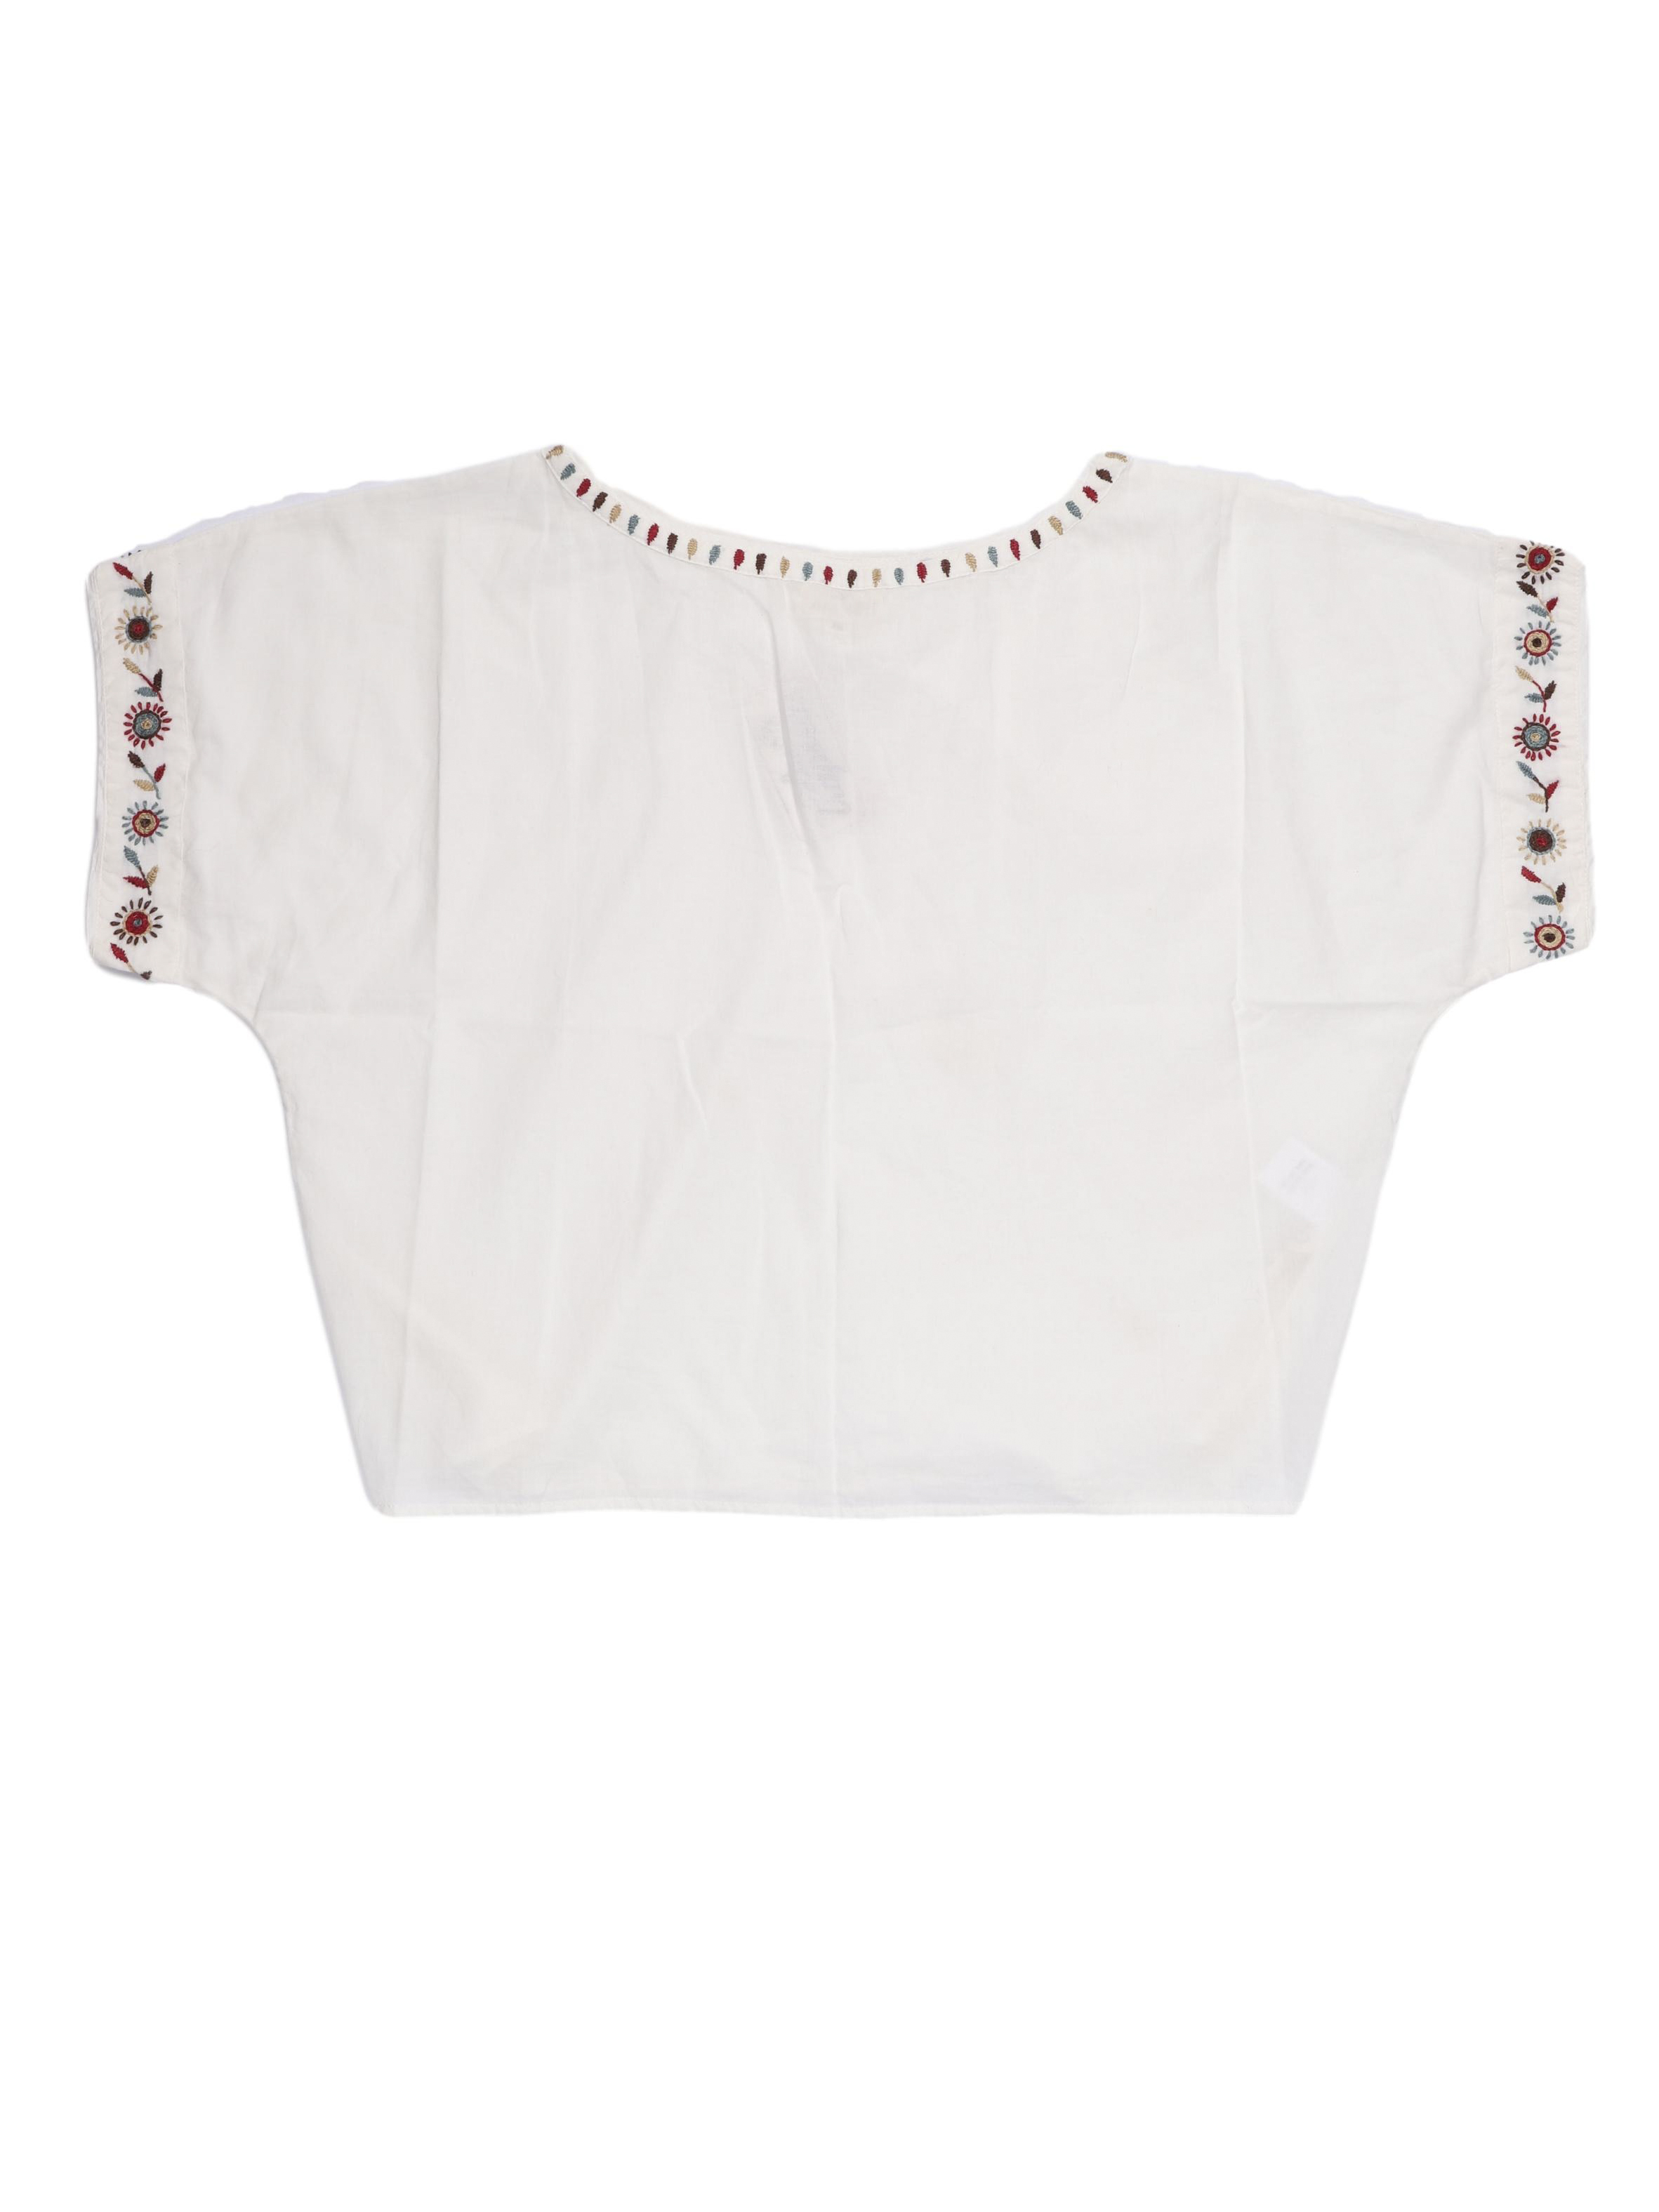 Blusa oversized Anokhi de algodón orgánico crema con detalles bordados en cuello y mangas. Hermoso y rico al tacto. Precio original S/ 230